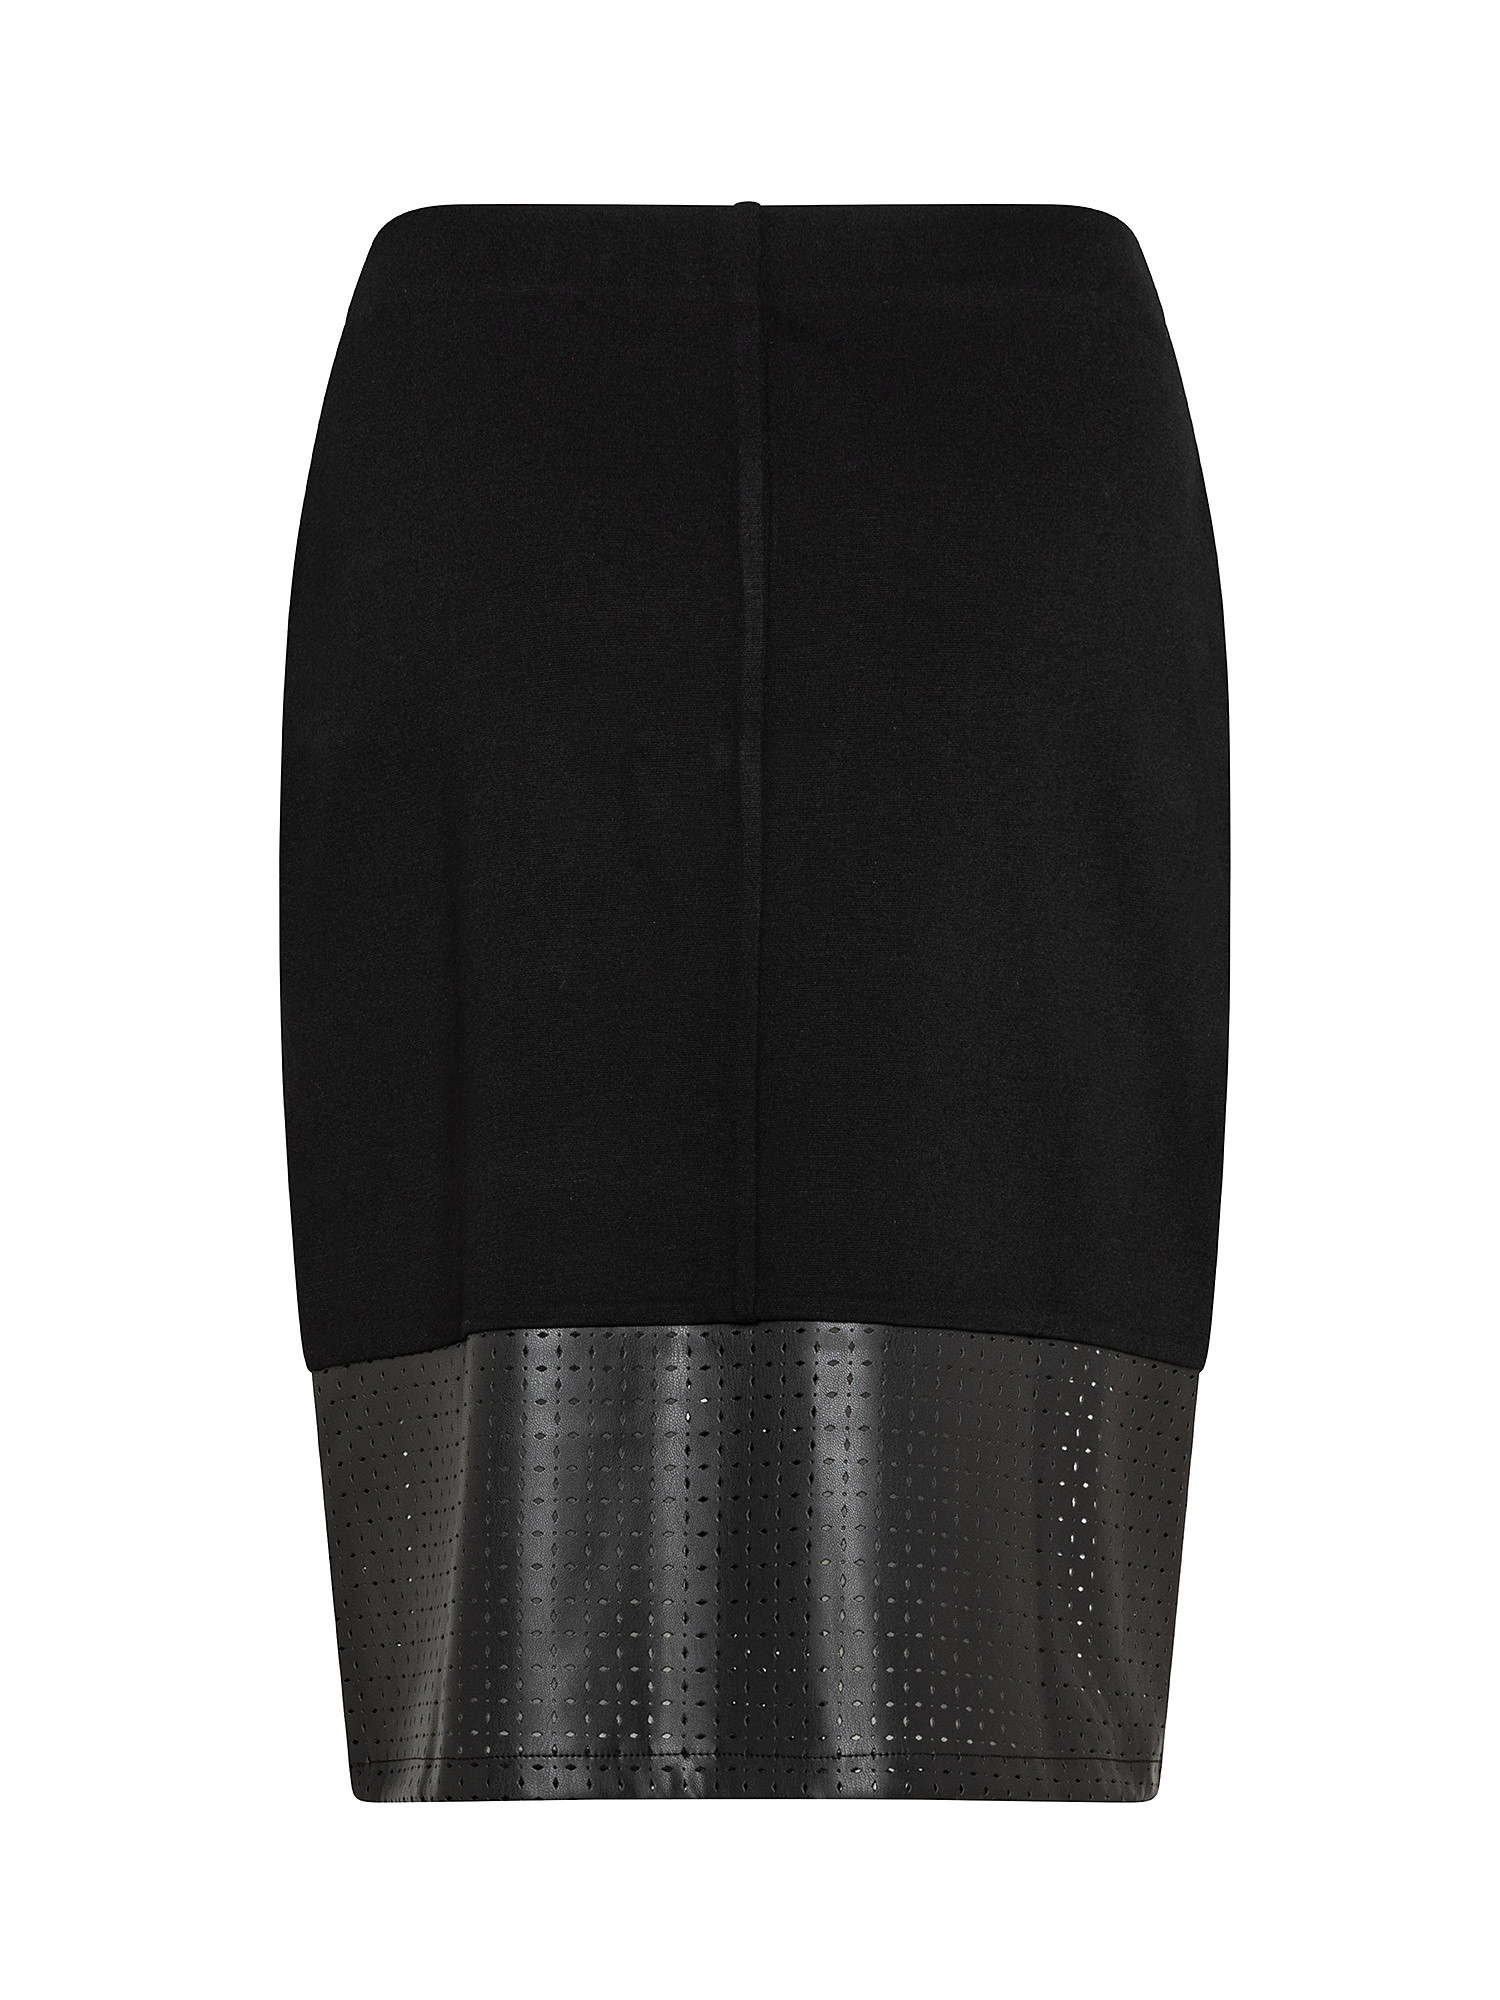 Koan - Patterned skirt, Black, large image number 1